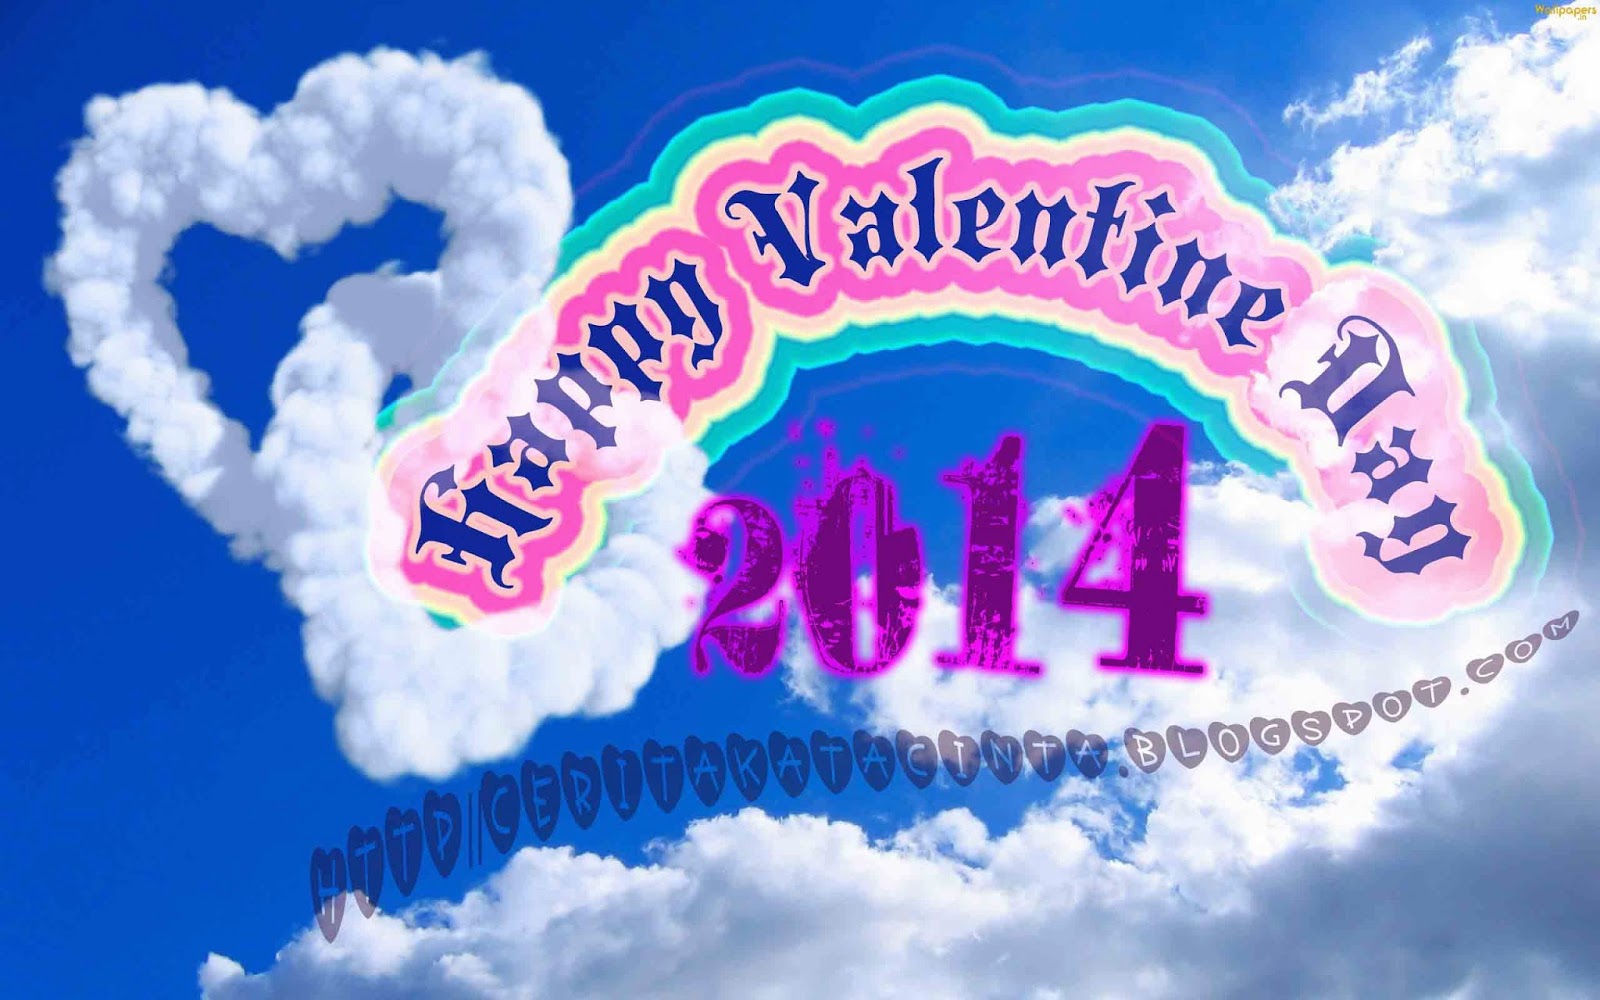 Kumpulan Kata Romantis Ucapan Selamat Hari Valentine 2015